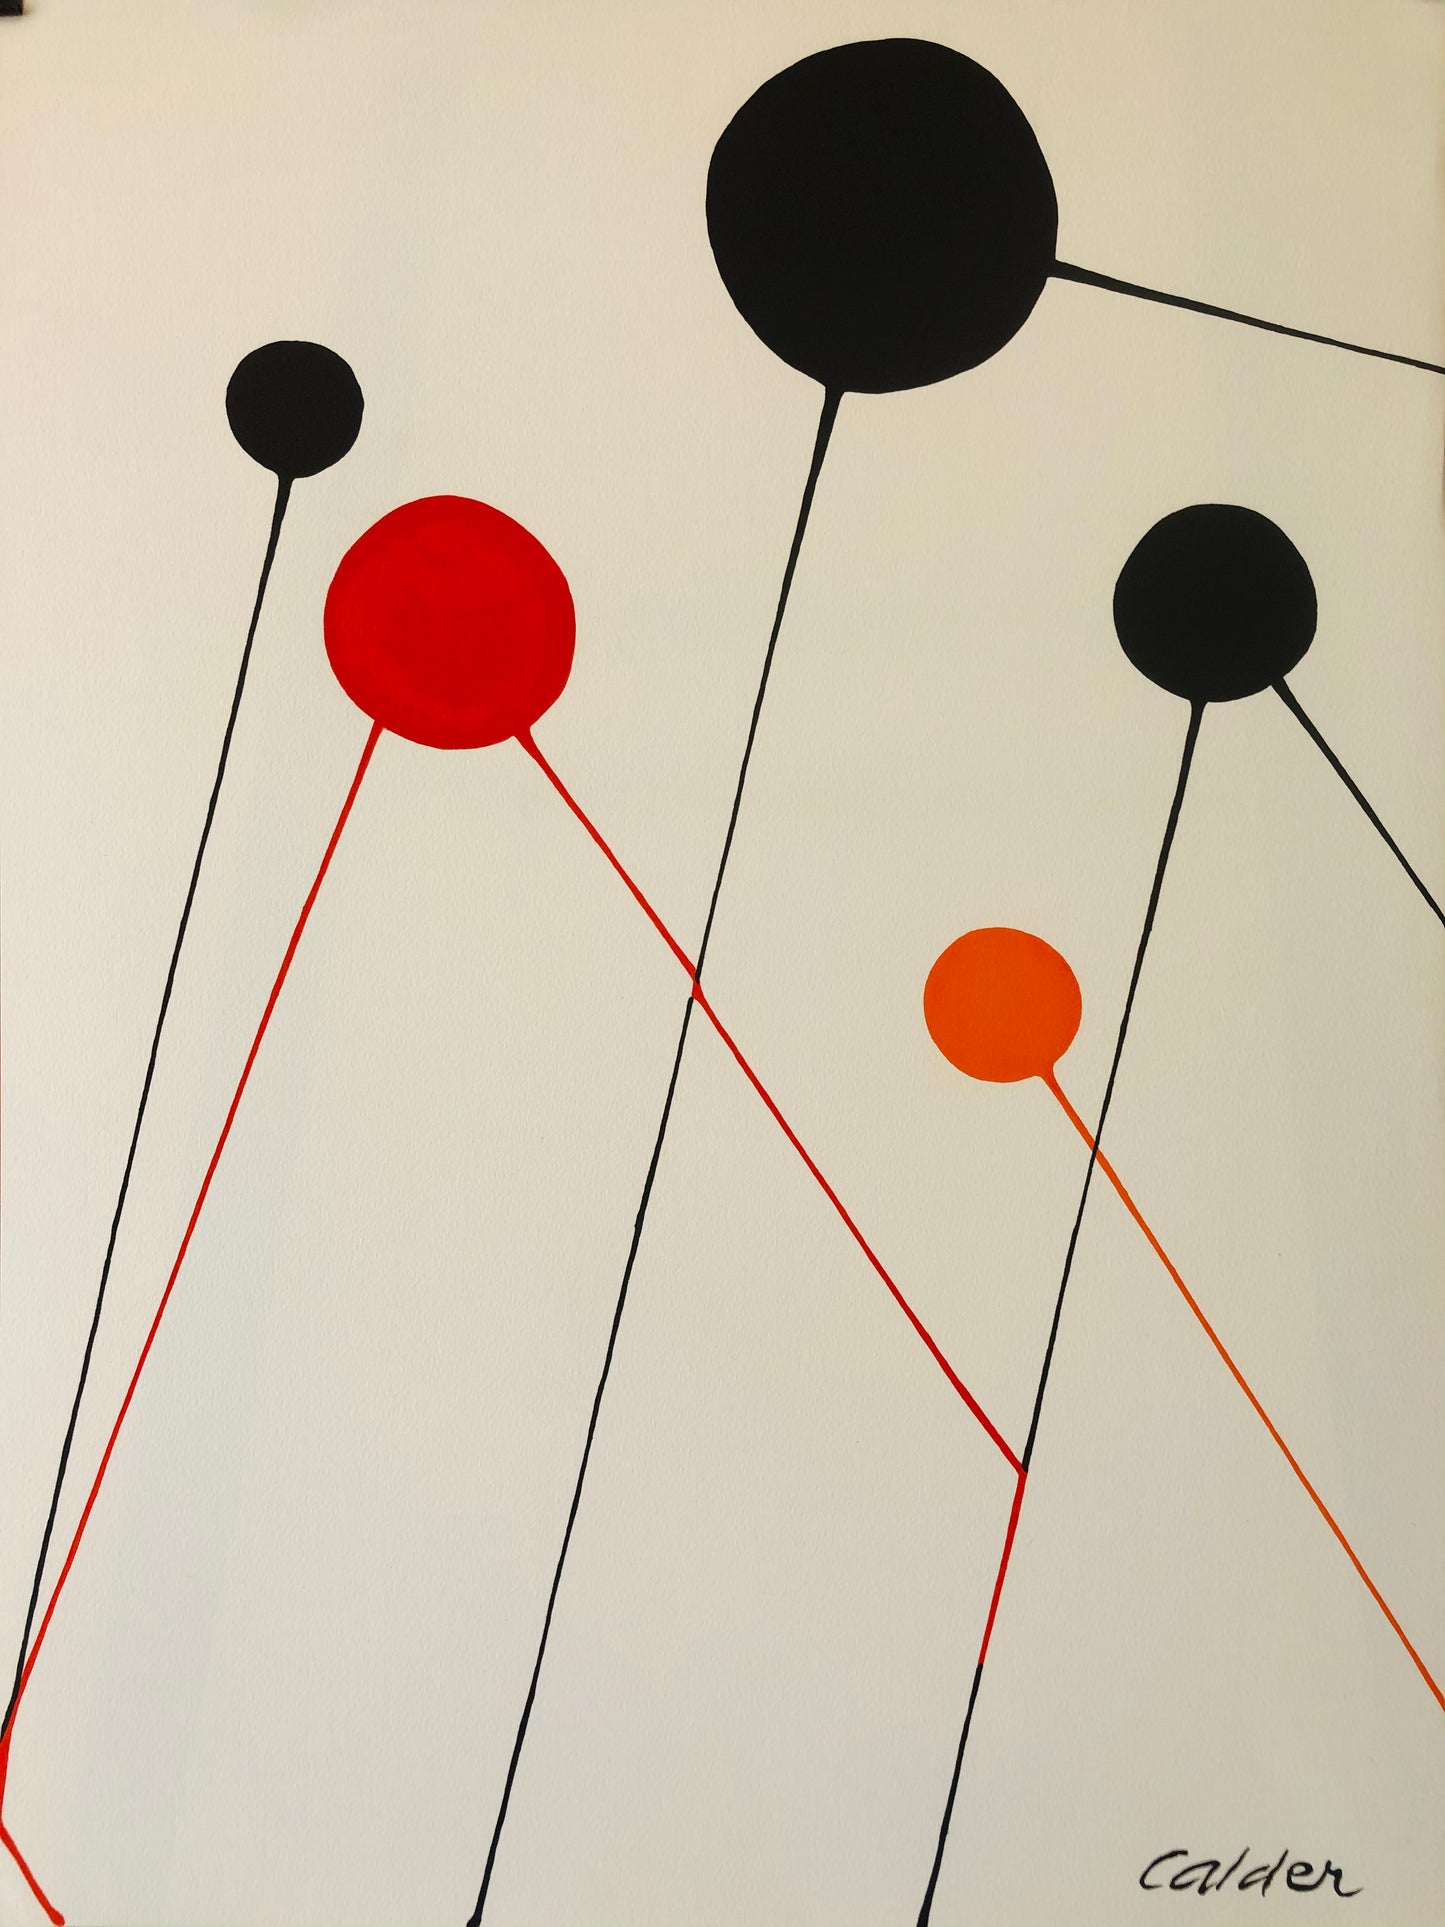 Calder Lithograph, "Balloons"